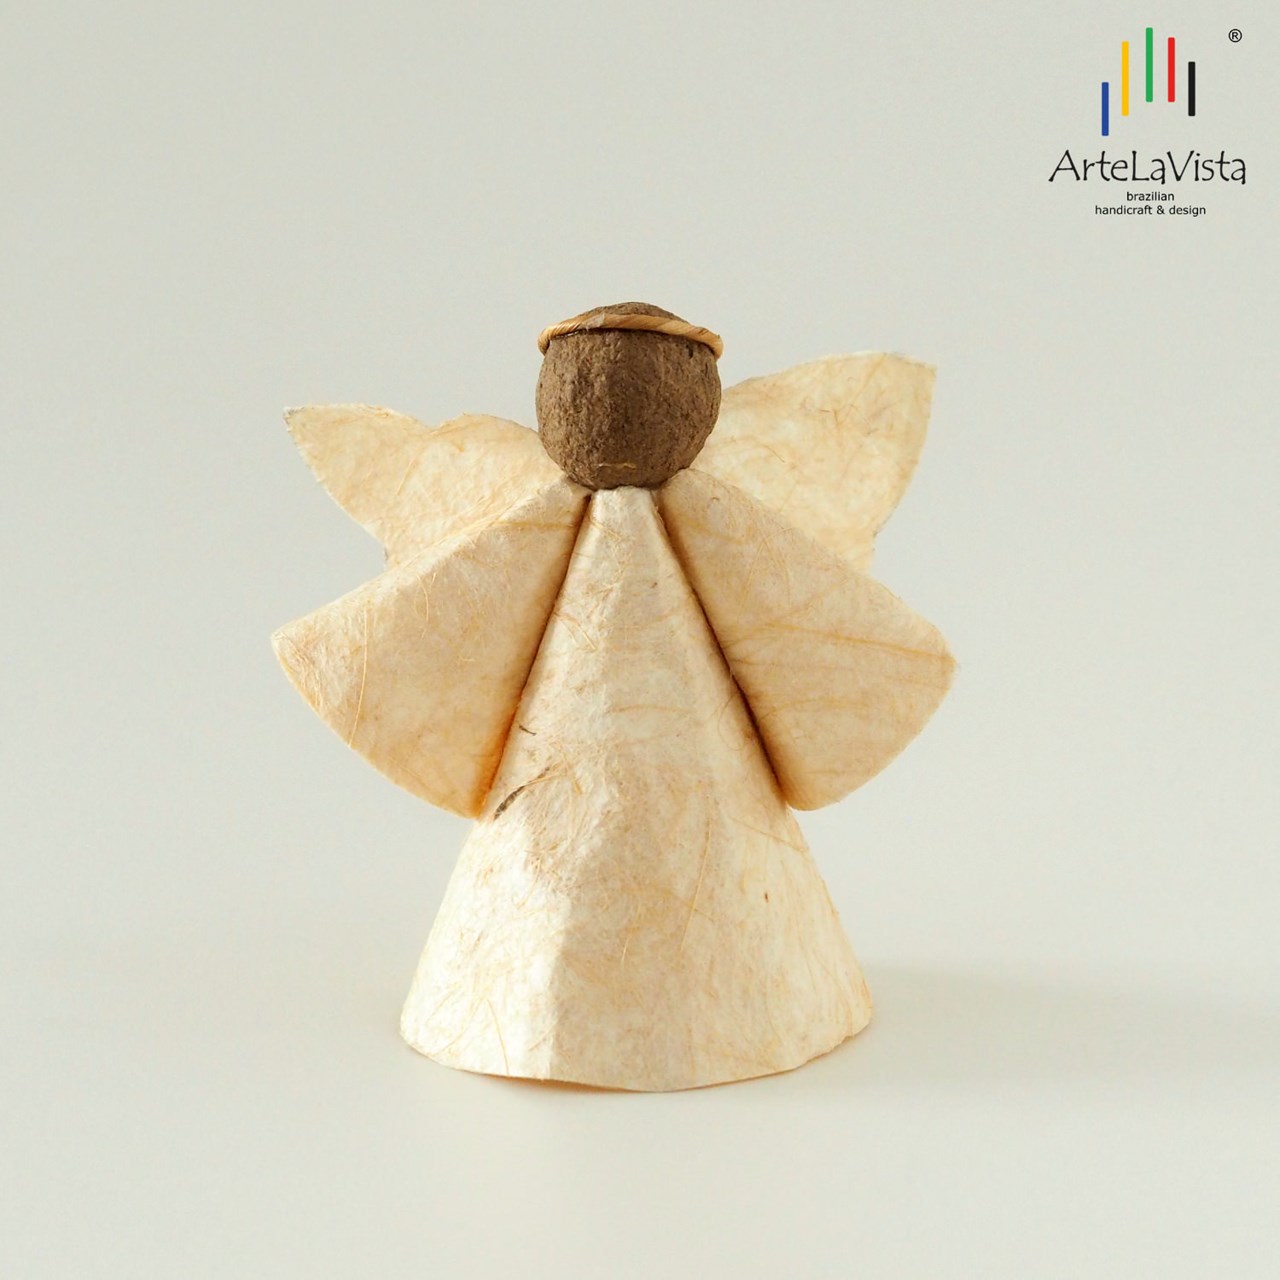 ArteLaVista - brazilian handicraft & design Produkt-Beispiele Engel aus Bananenfasernpapier - weiß M